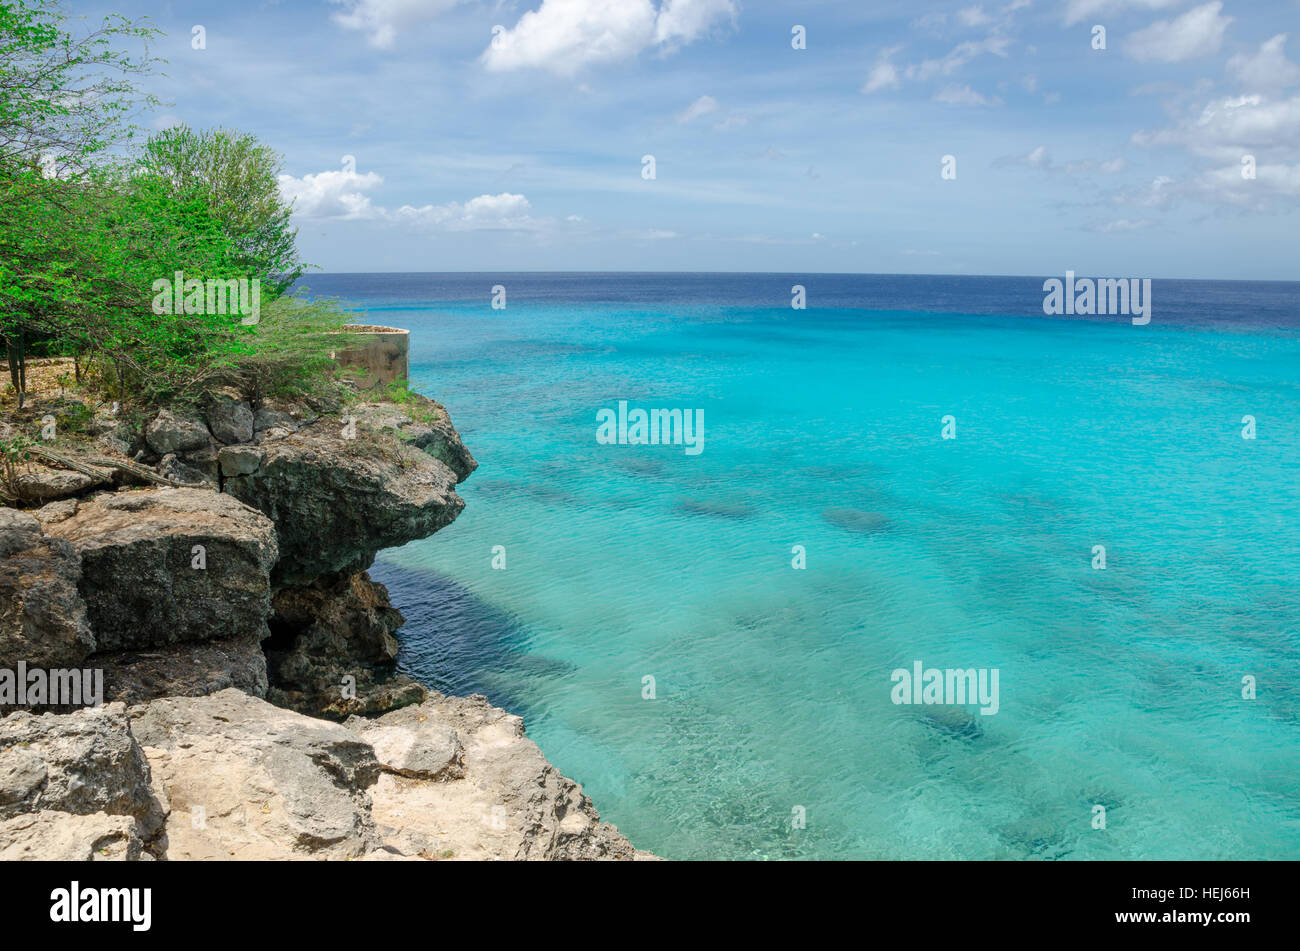 La splendida Grand Knip Beach nelle Antille olandesi la isola di Curaçao nei Caraibi Foto Stock